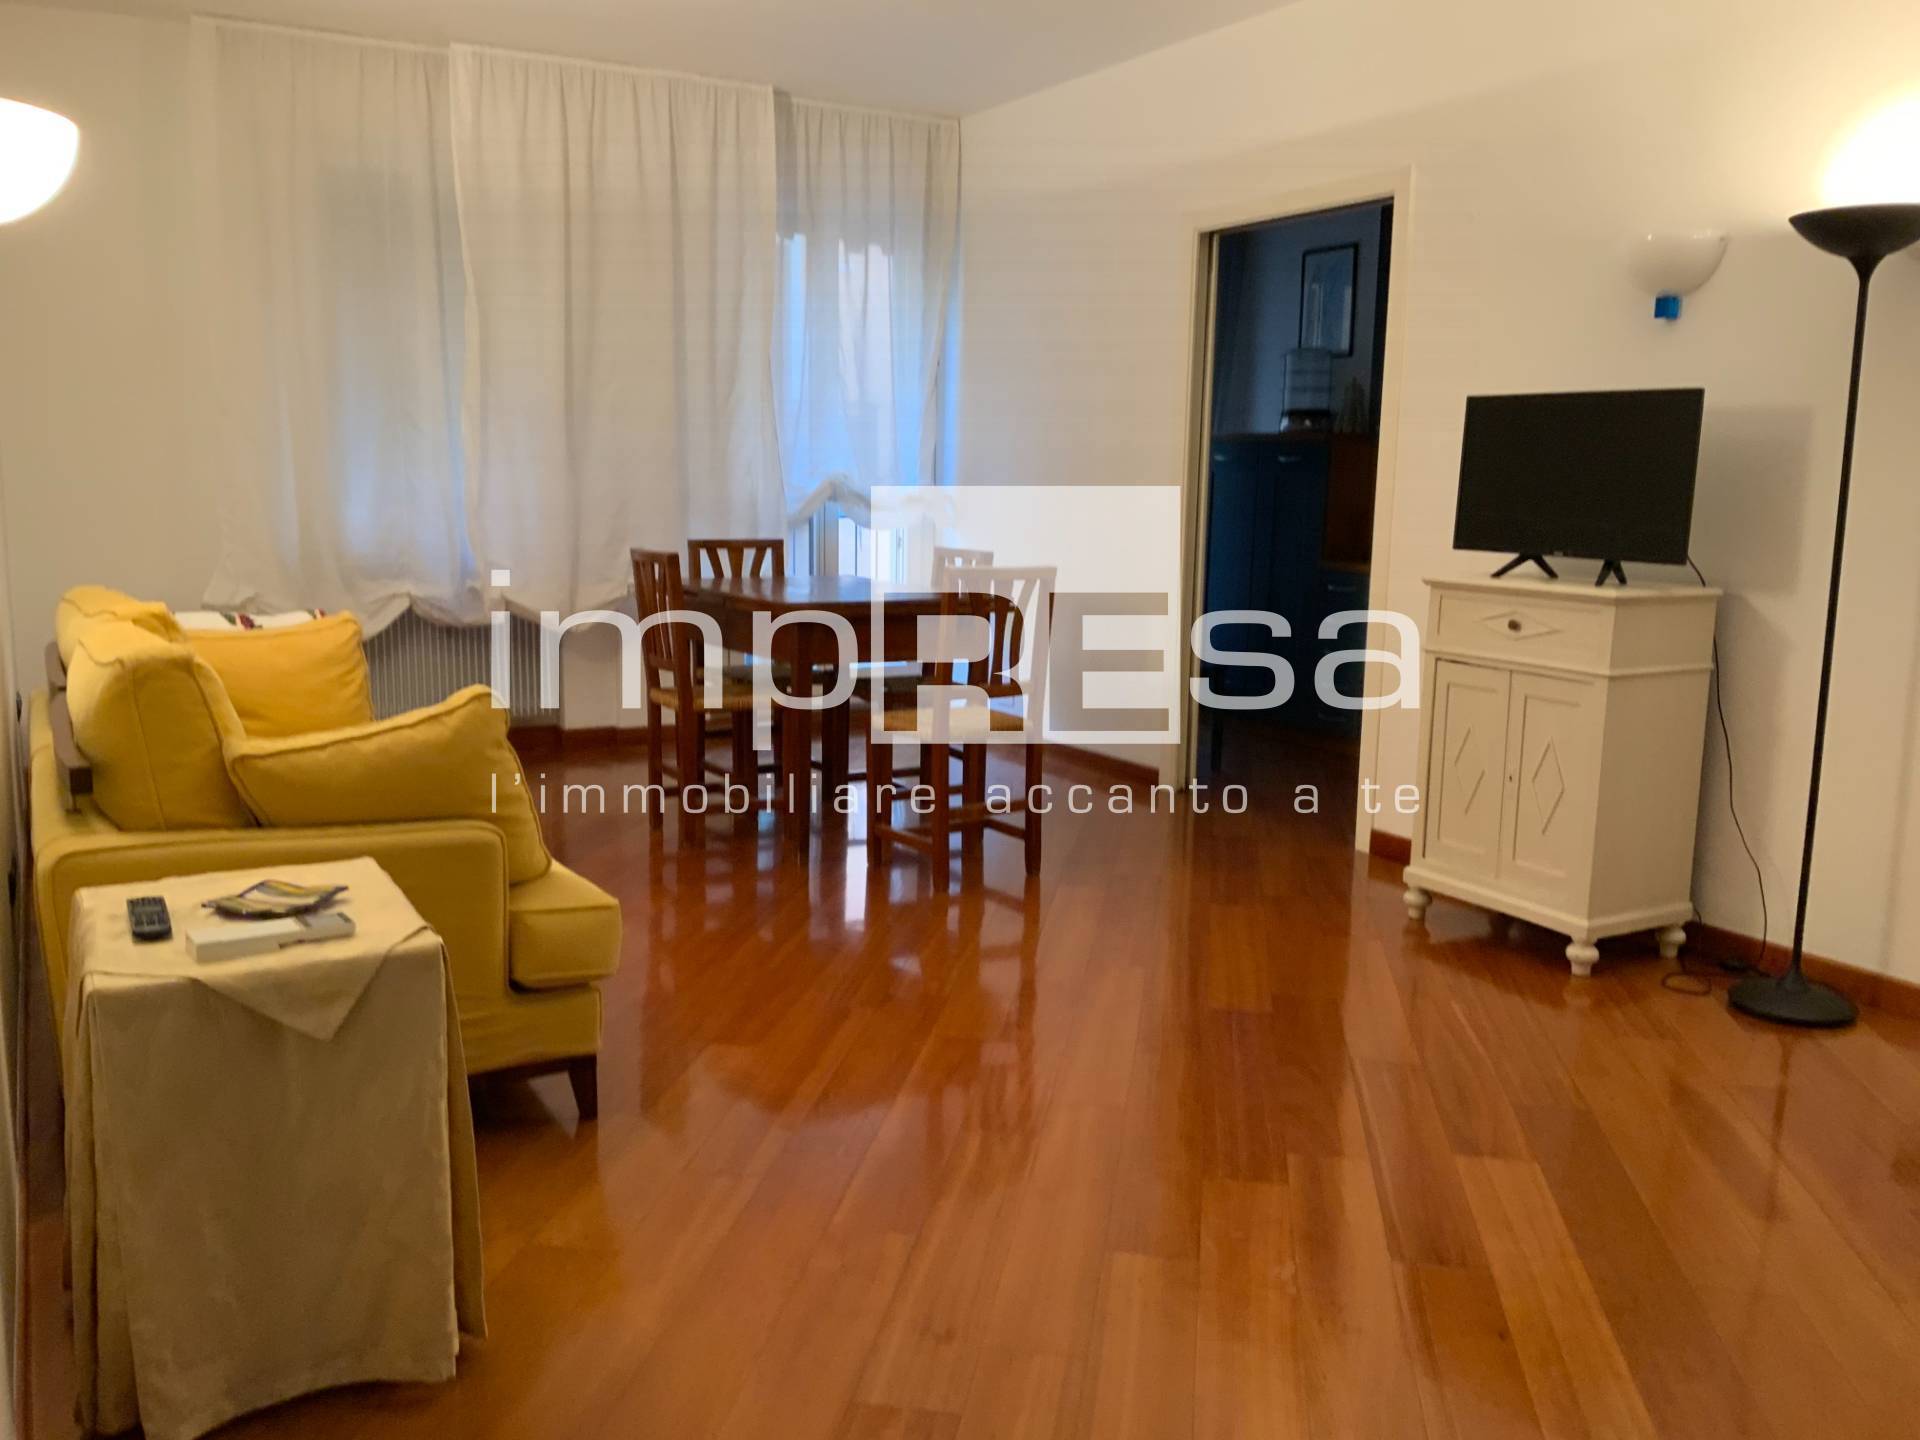 Appartamento in affitto a Treviso, 3 locali, zona Località: Centrostorico, prezzo € 1.000 | PortaleAgenzieImmobiliari.it